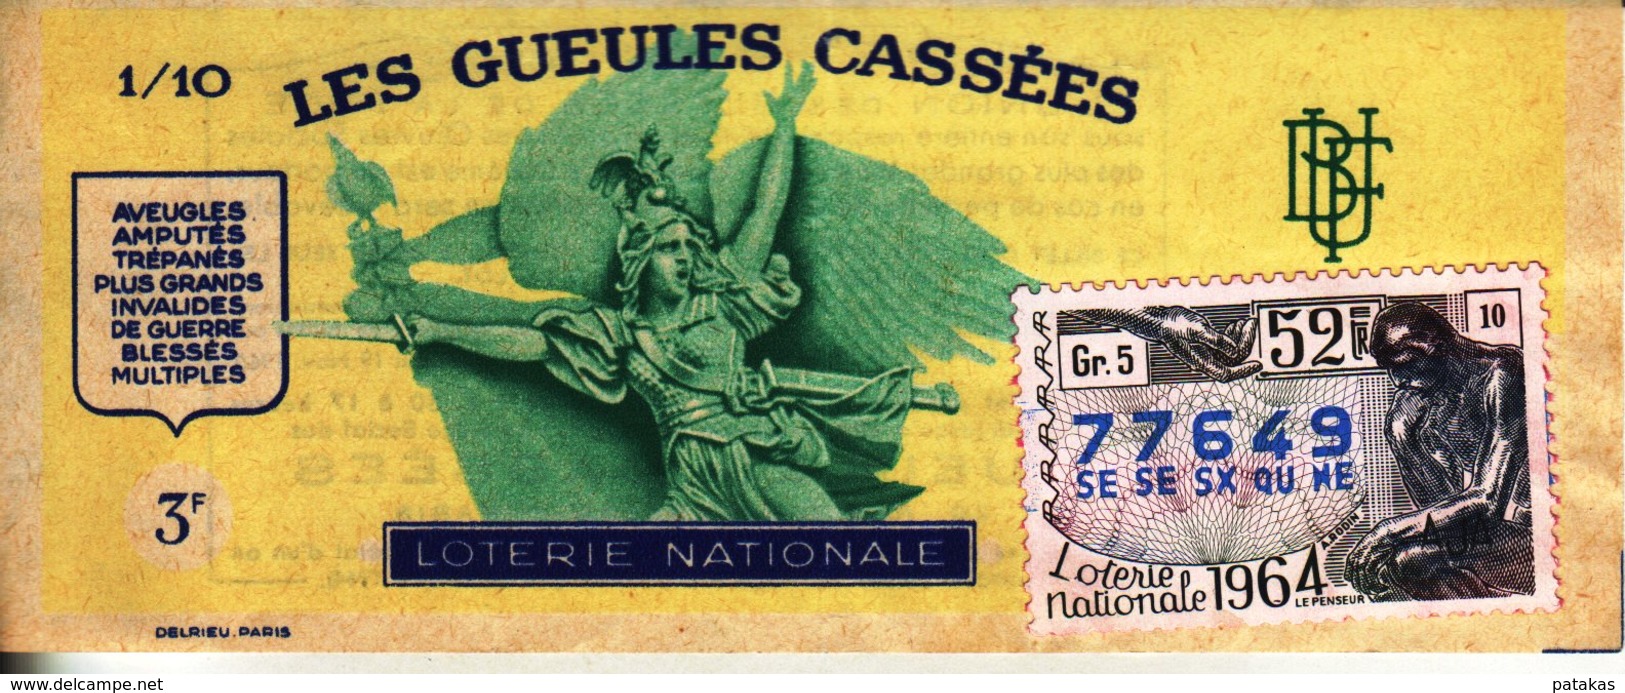 France - 353 - Les Gueules Cassées - 52 ème Tranche 1964 - Lottery Tickets